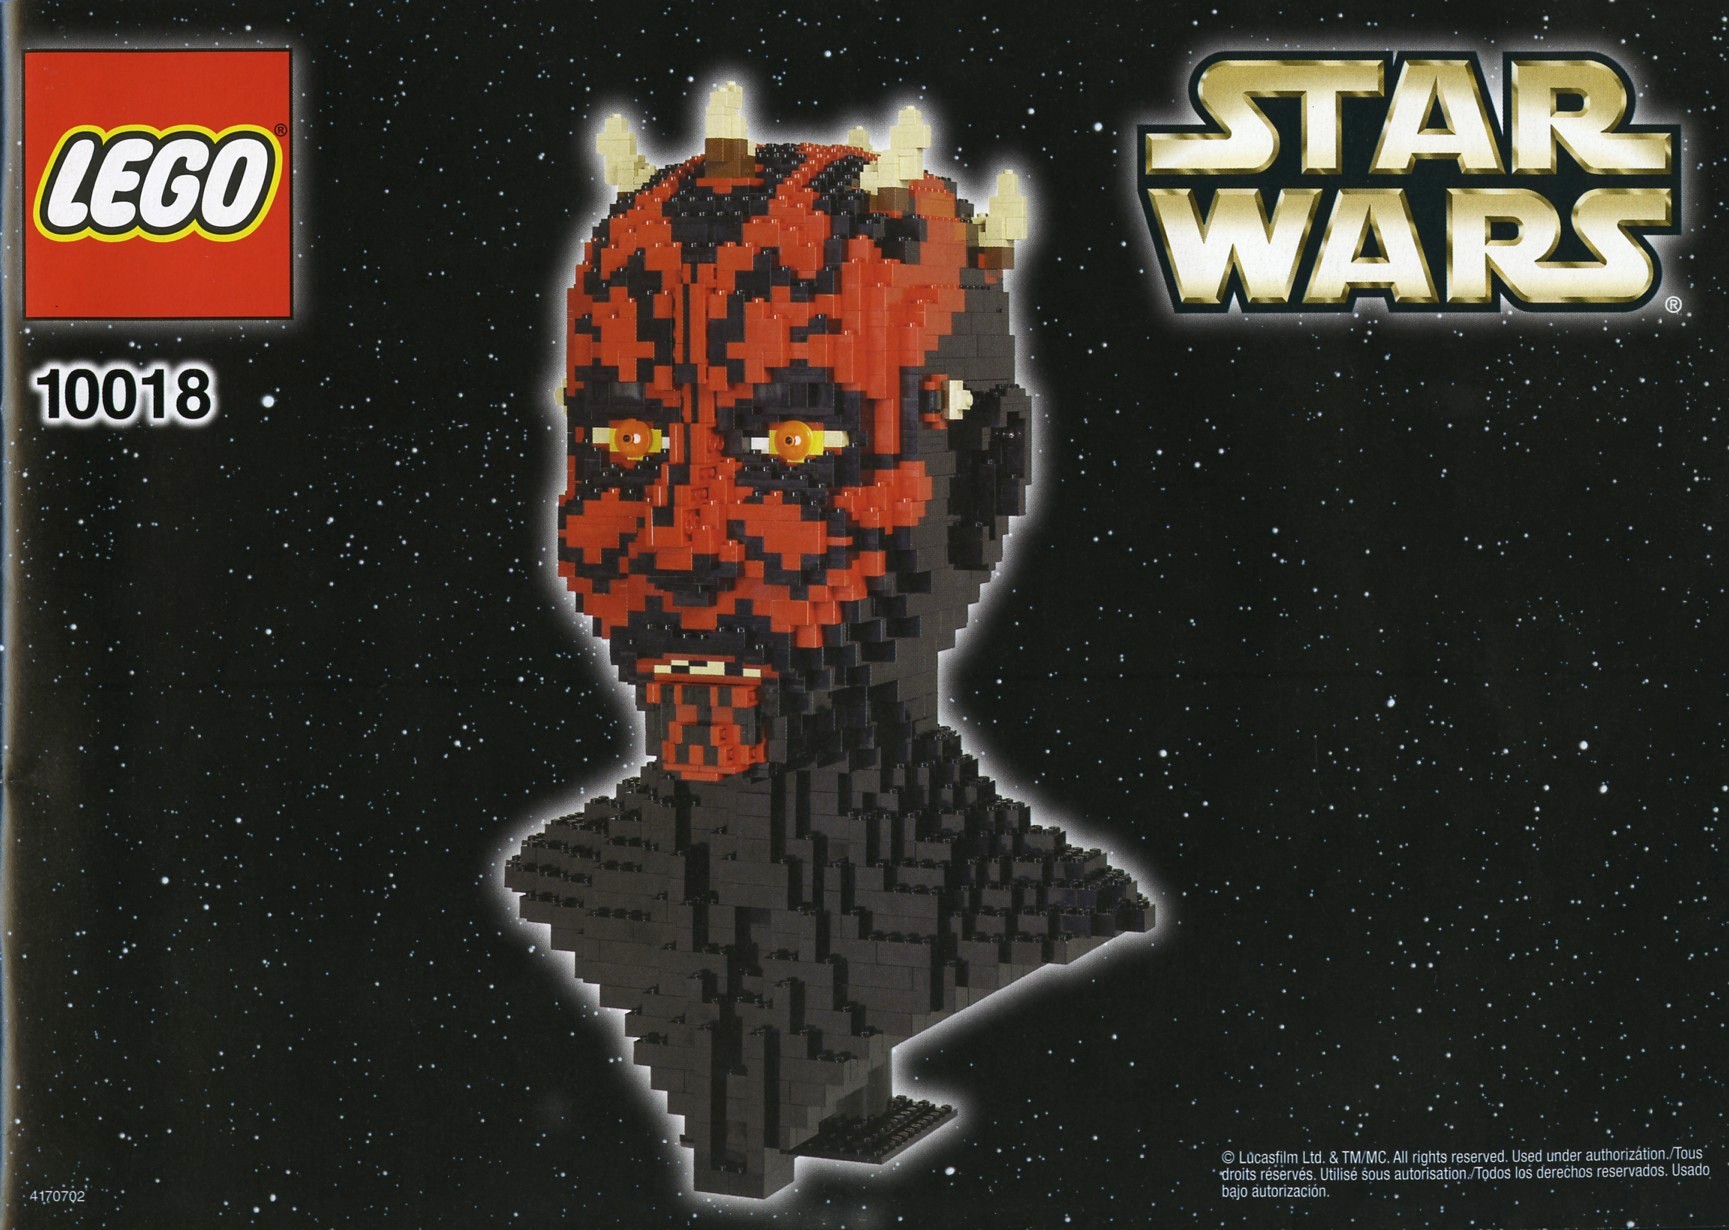 gentagelse Rædsel Begå underslæb Star Wars | Ultimate Collector Series | Brickset: LEGO set guide and  database